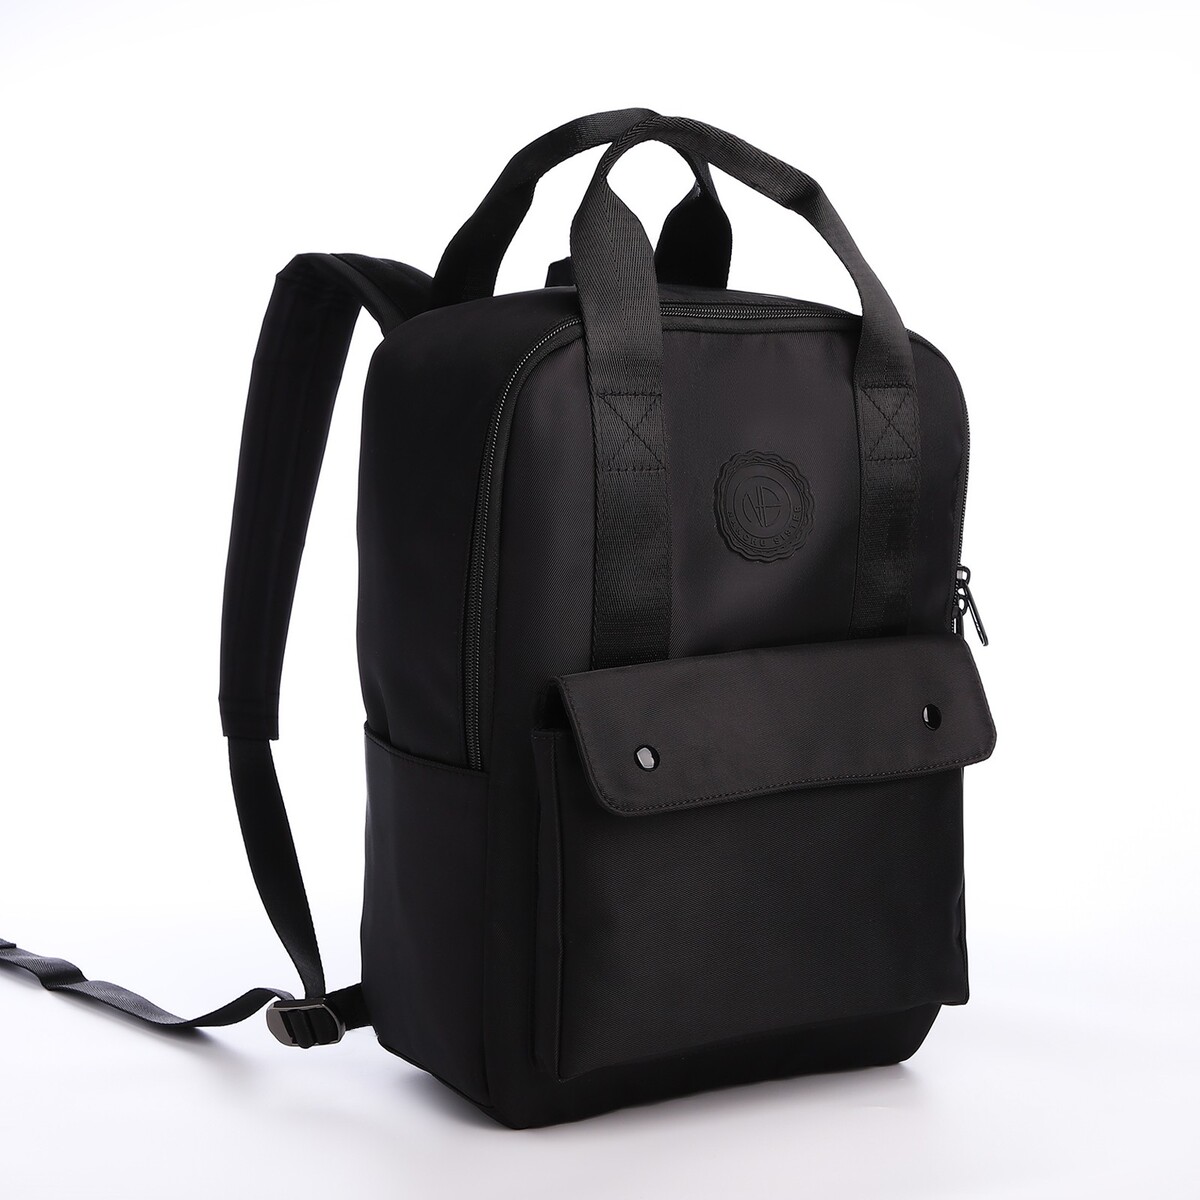 Рюкзак молодежный из текстиля на молнии, отдел для ноутбука, 4 кармана, цвет черный рюкзак torber vector 15 6 t9869 blk с отделением для ноутбука